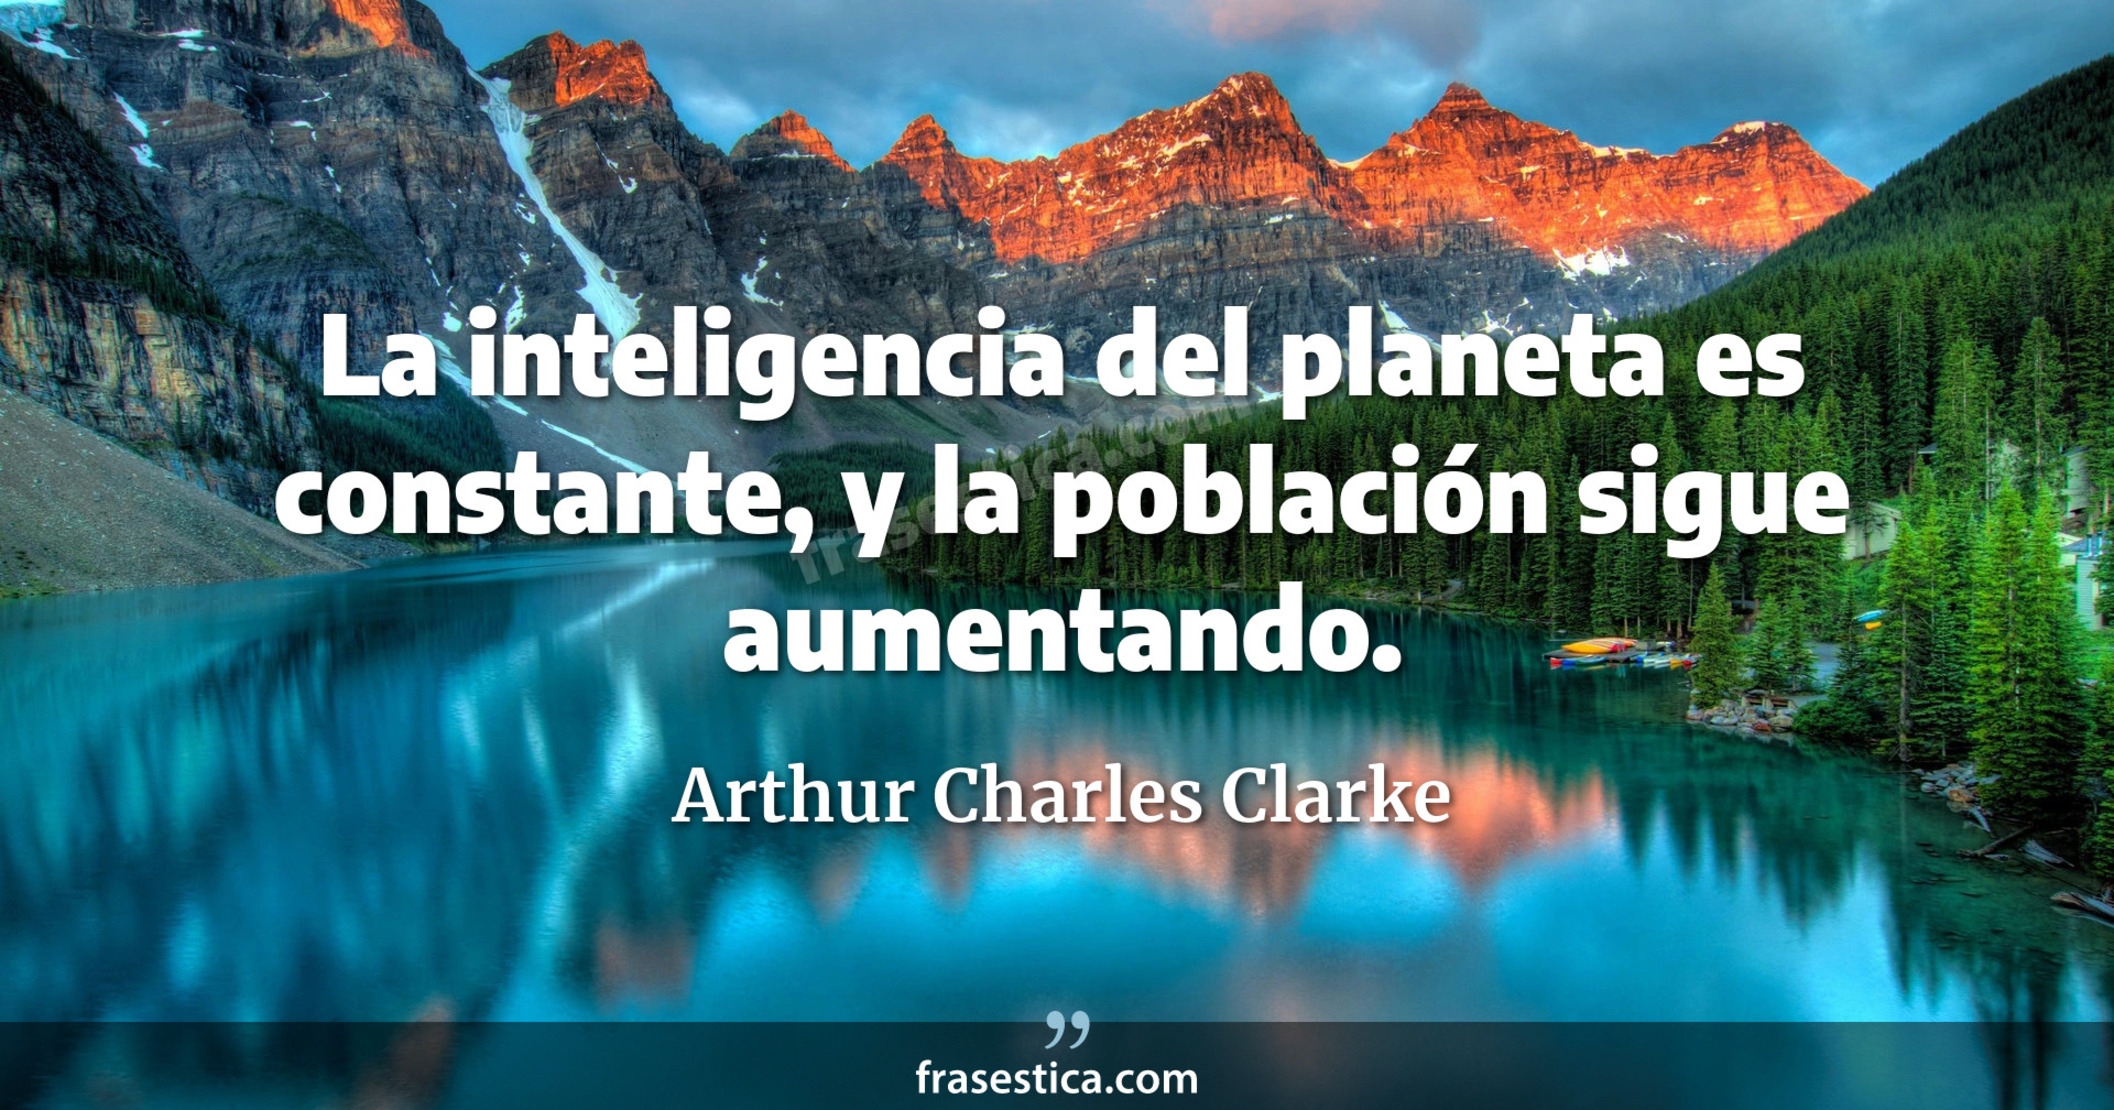 La inteligencia del planeta es constante, y la población sigue aumentando. - Arthur Charles Clarke